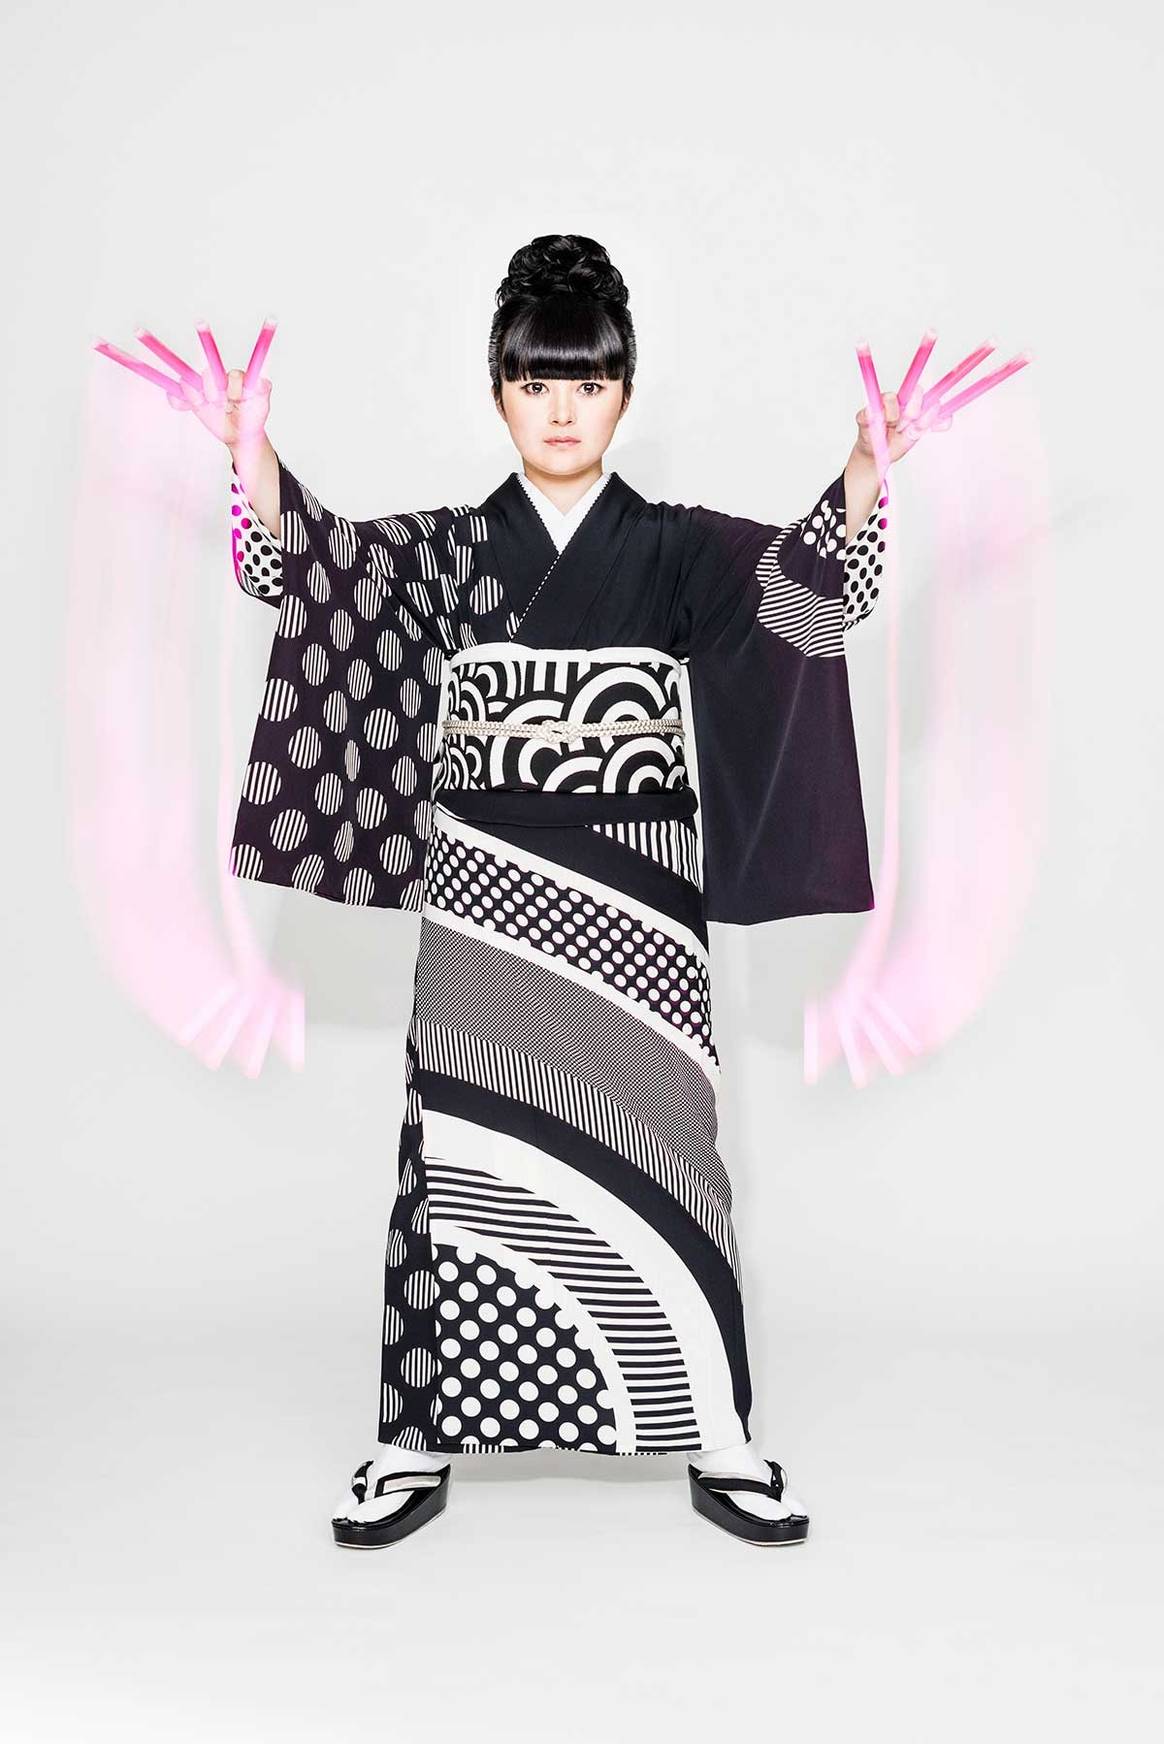 V&A zeigt erste große Kimono-Ausstellung in Europa